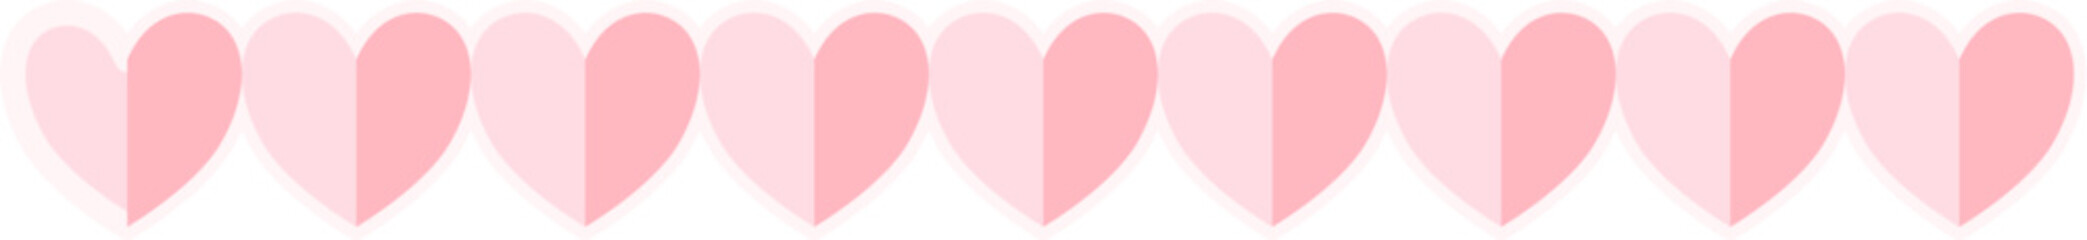 Pink Heart Valentine Border Design Element